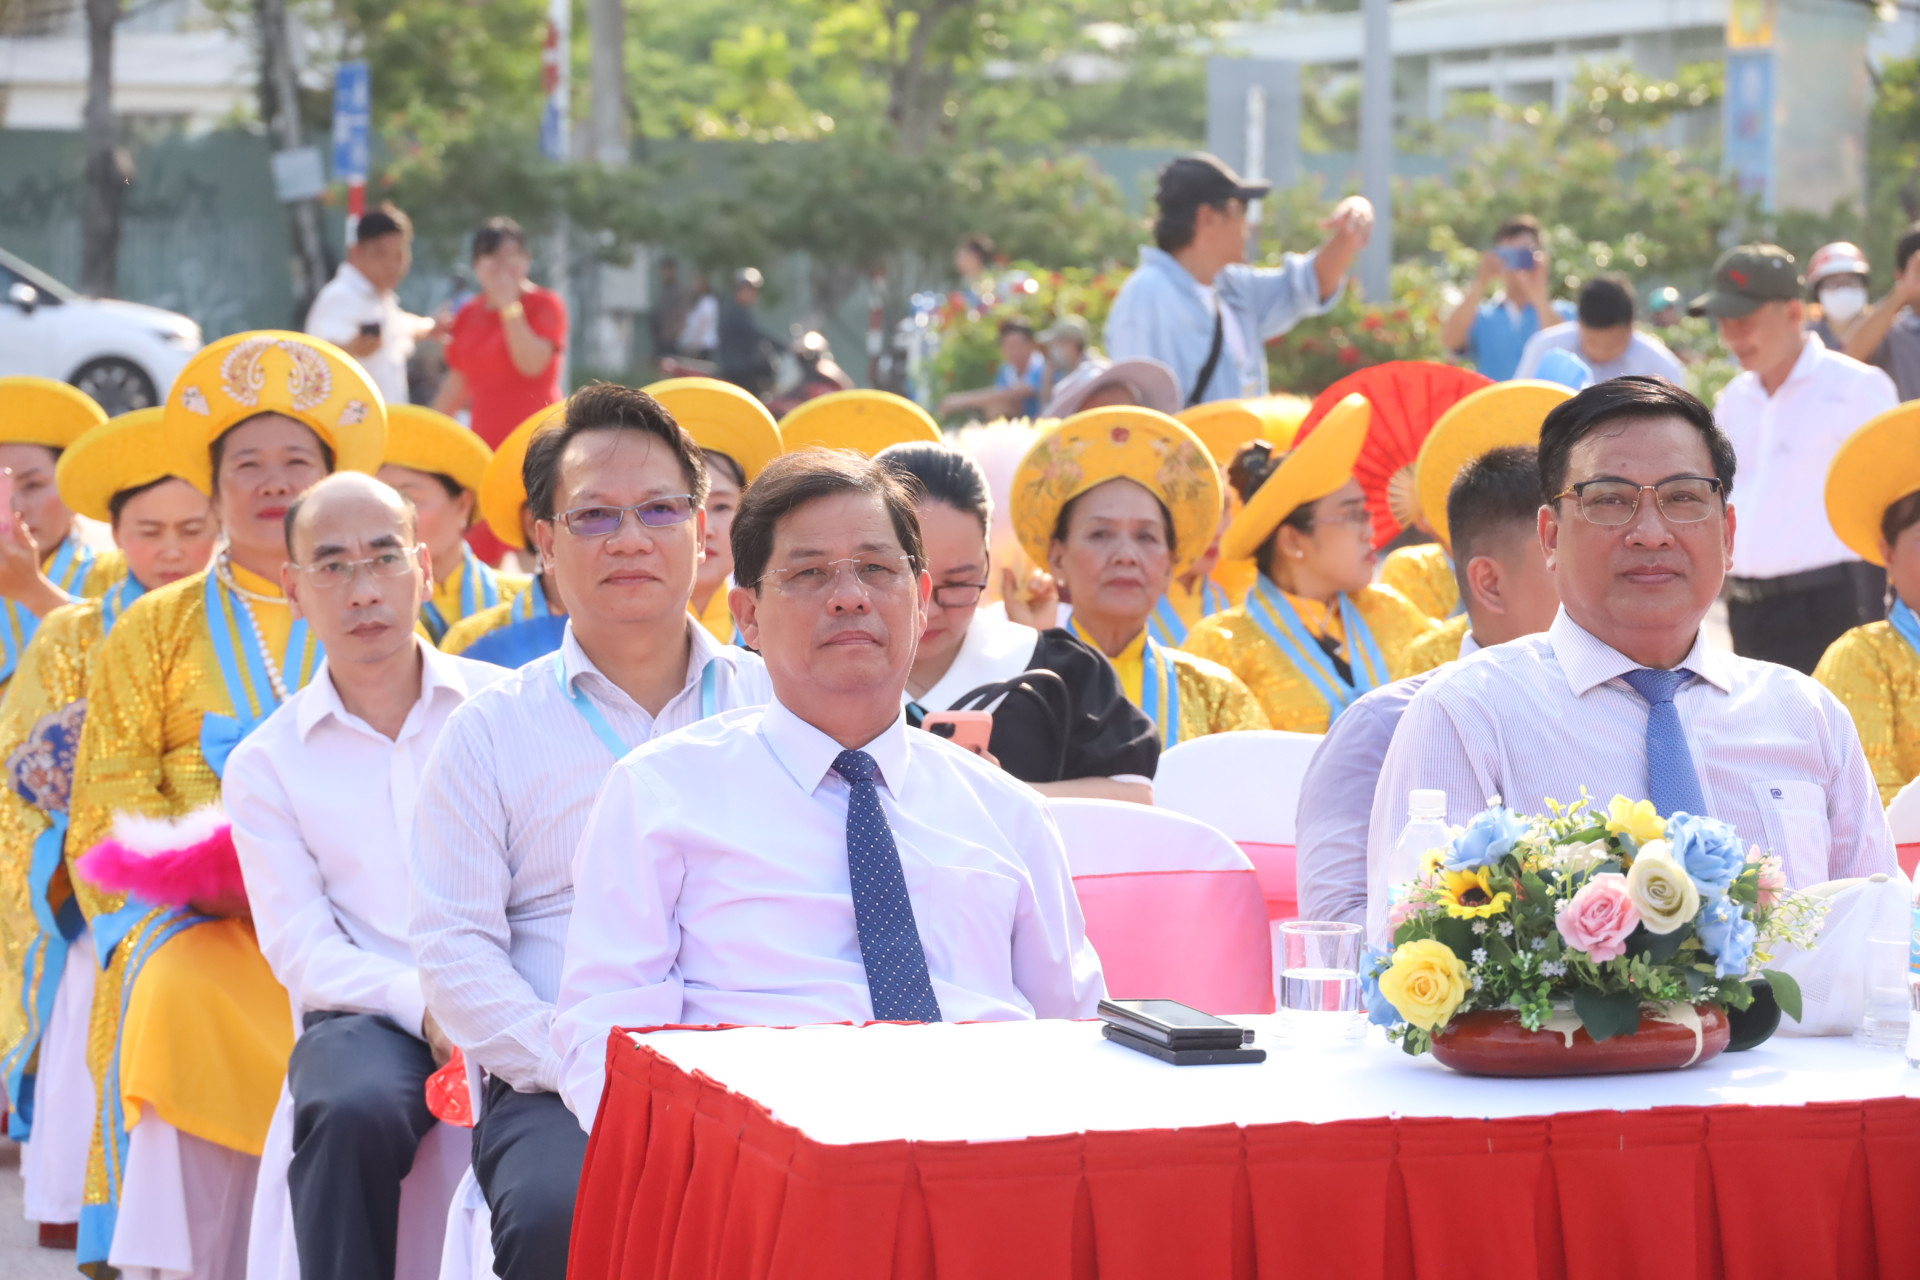 Đồng chí Nguyễn Tấn Tuân và Lê Hữu Thọ đến dự buổi tái hiện lễ hội cầu ngư.